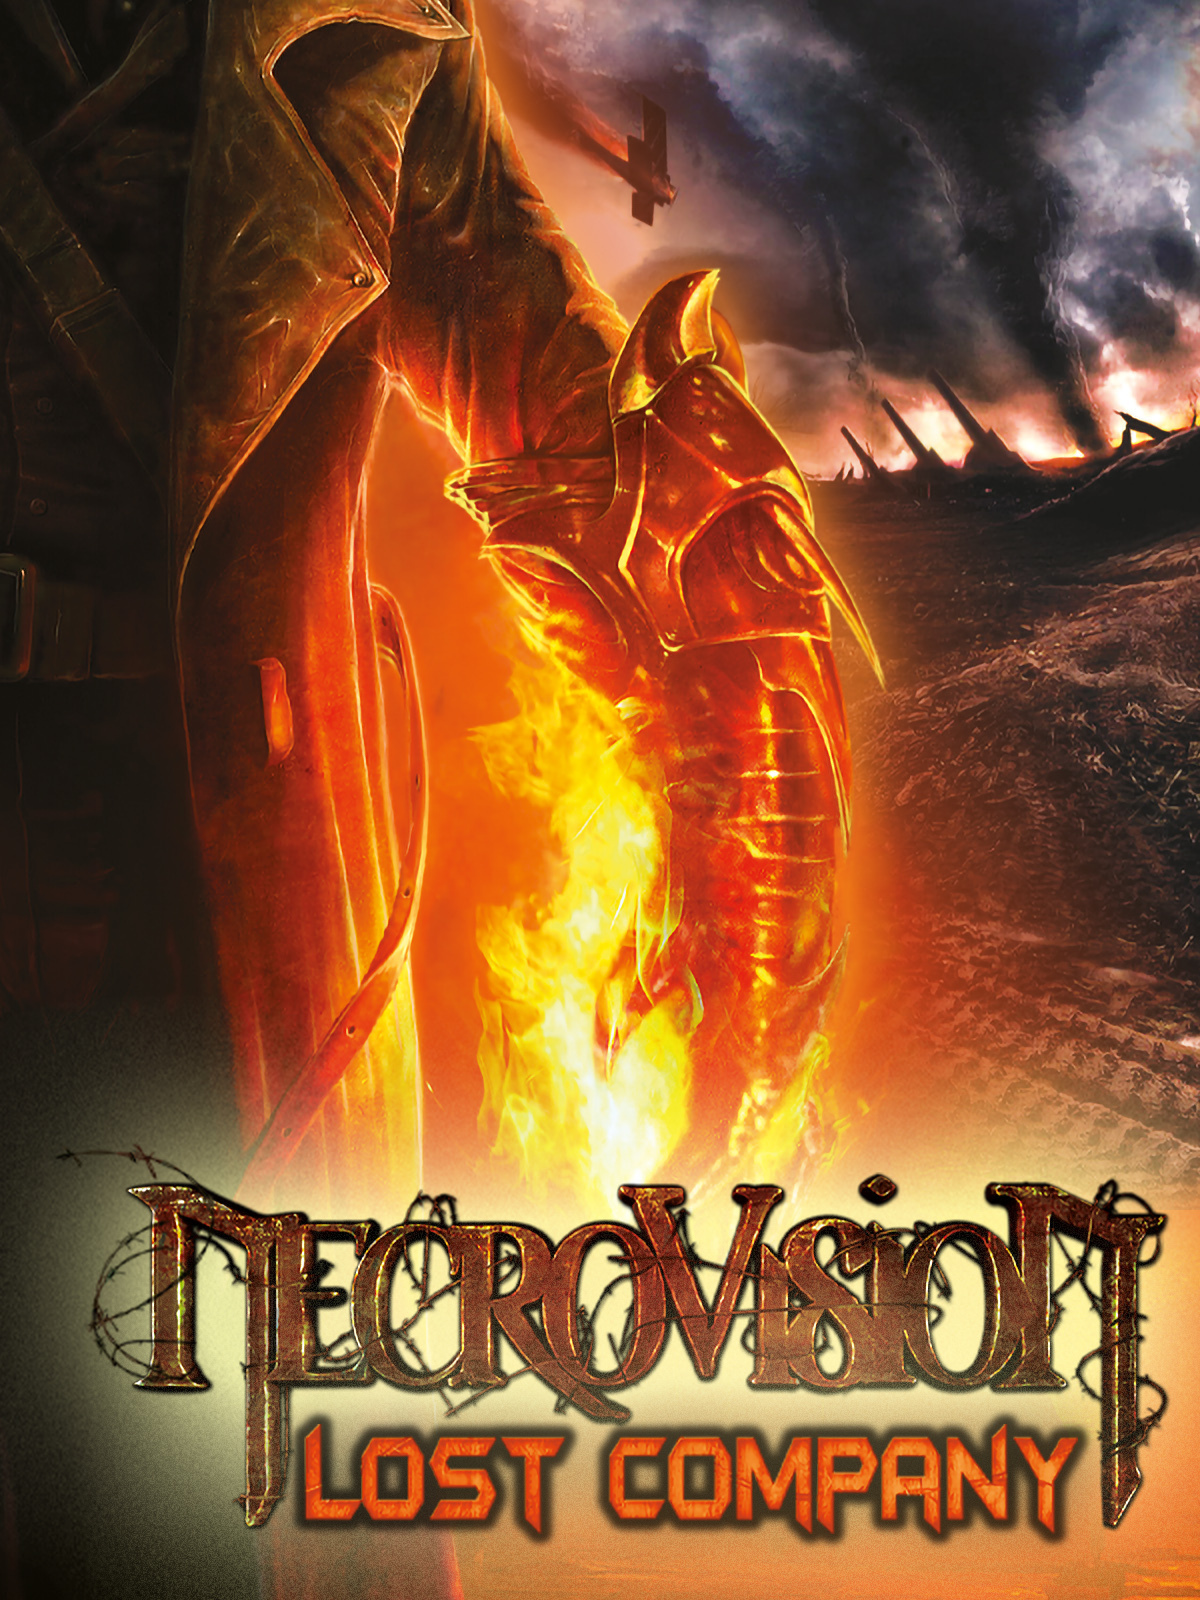 NecroVisioN - Metacritic